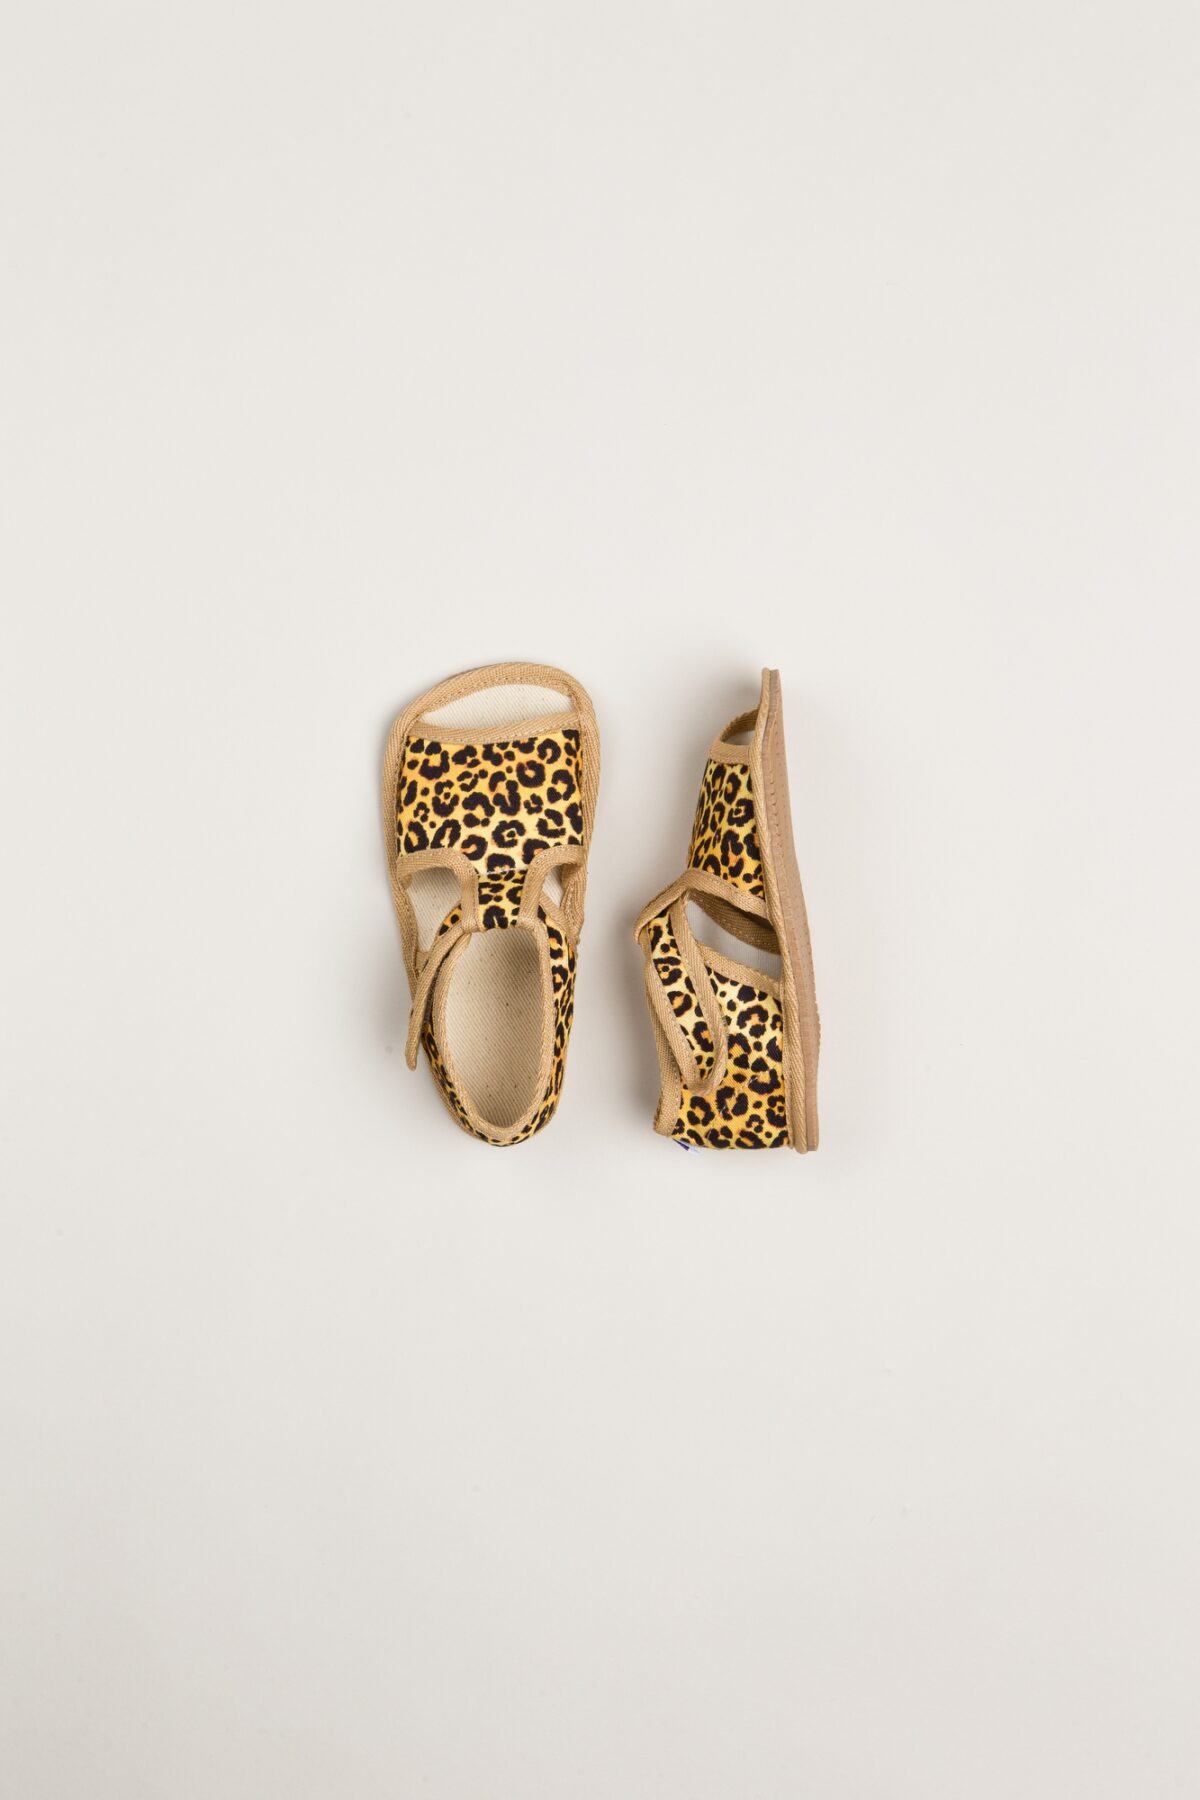 Milash sisejalats Monica- COOL KIDS leopard Laste barefoot jalatsid - HellyK - Kvaliteetsed lasteriided, villariided, barefoot jalatsid